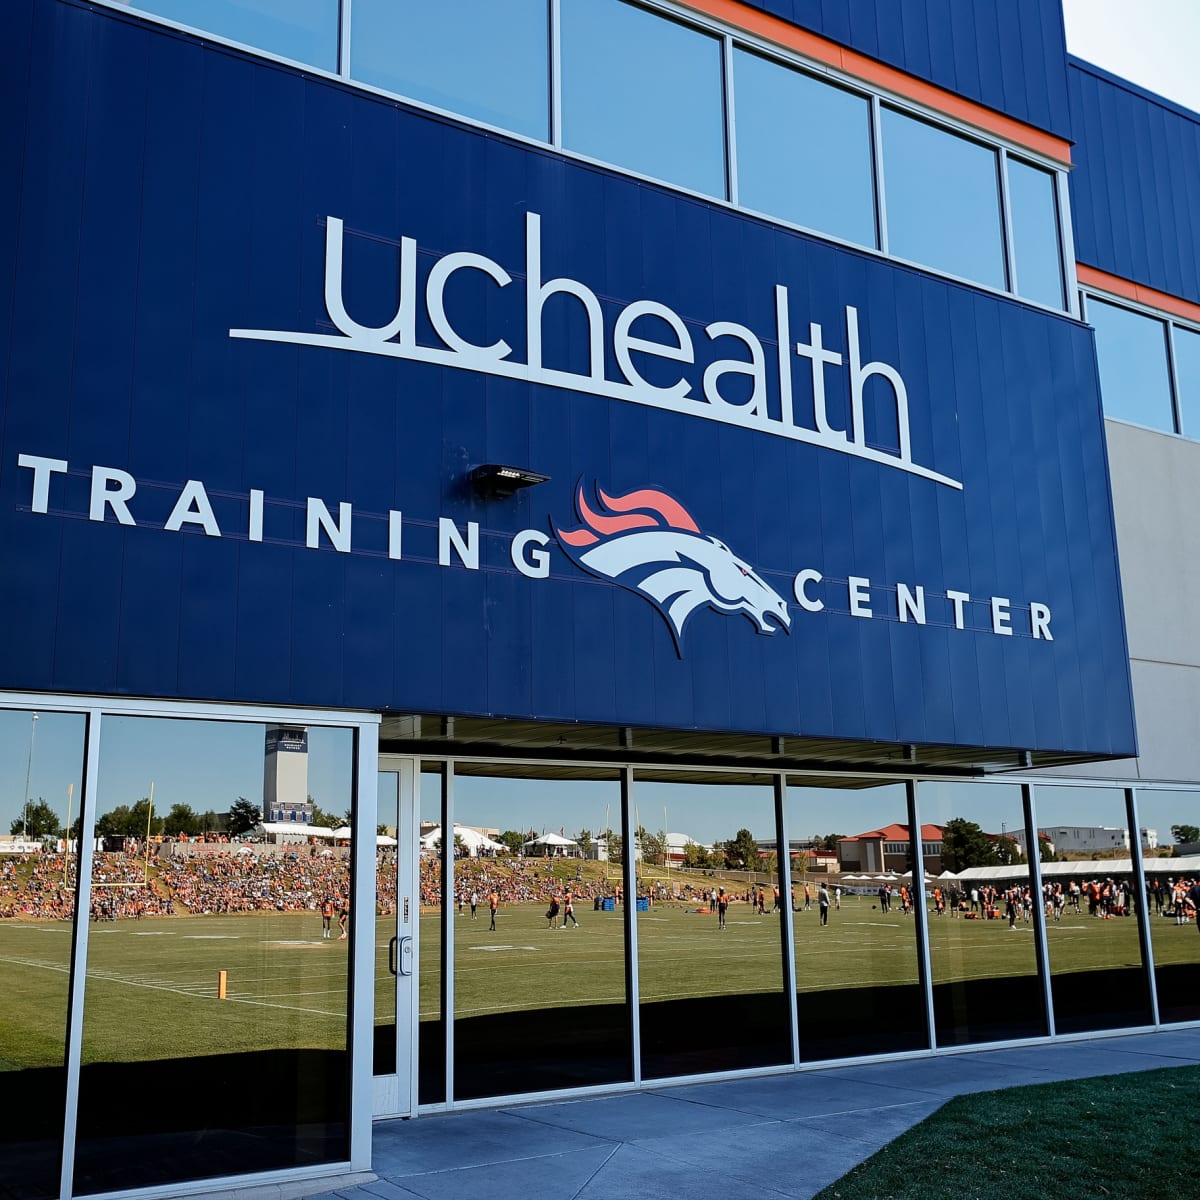 Denver Broncos to Rename Training Center as UCHealth Deal Expires